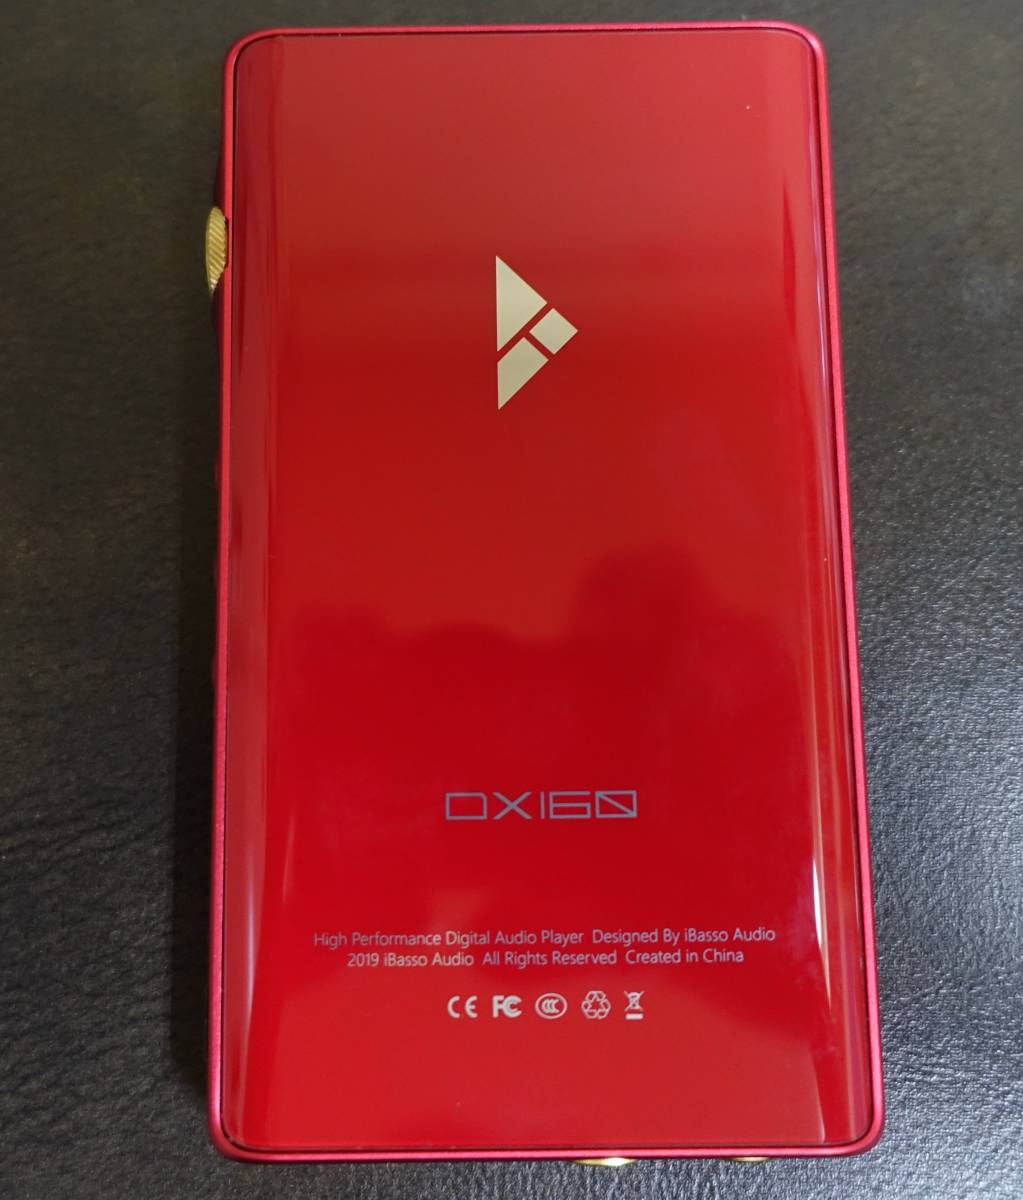 売れ筋ランキングも iBasso Audio DX160 ver.2020 ポータブルオーディオプレイヤー レッド